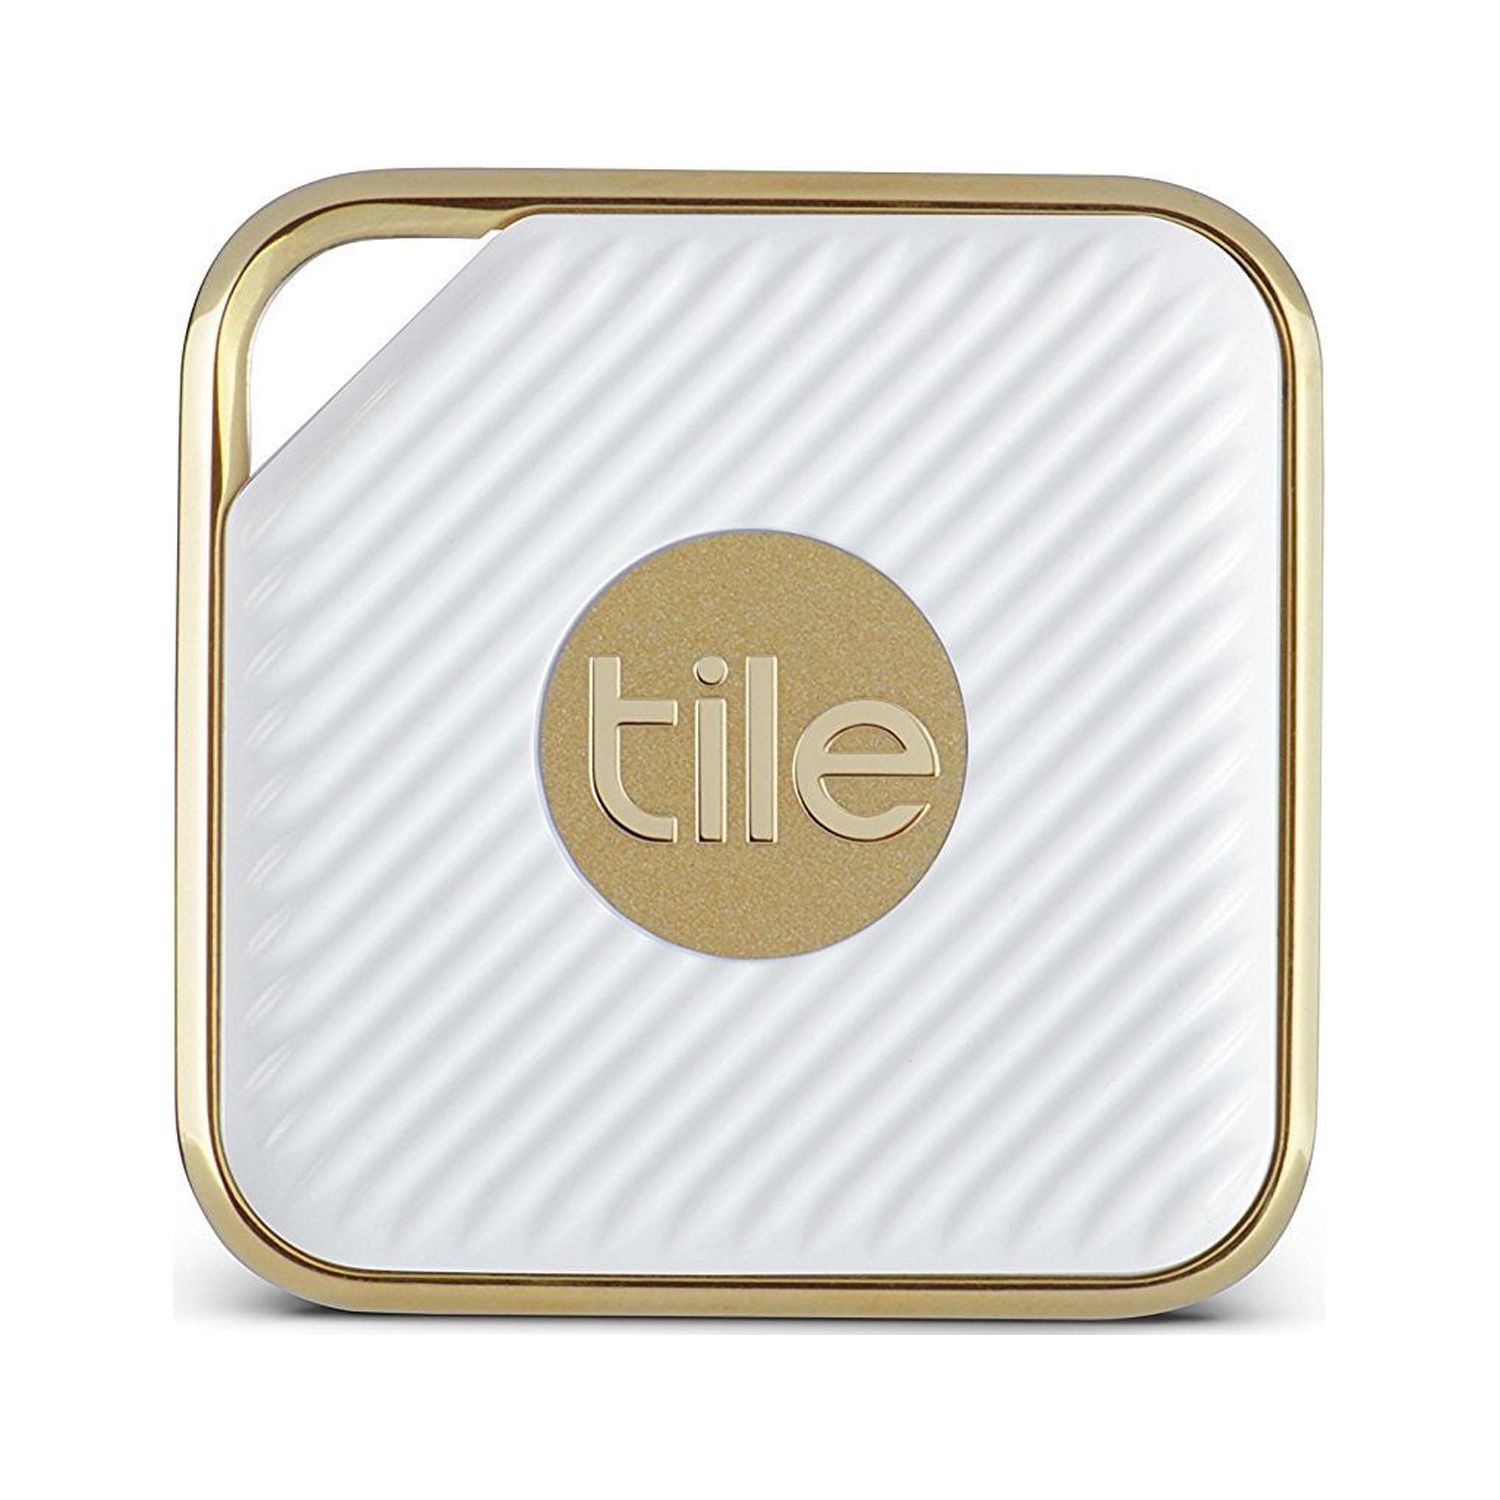 Tile Style Pro - Key Finder, Phone Finder, Anything Finder - 1 Pack, Gold - image 1 of 6